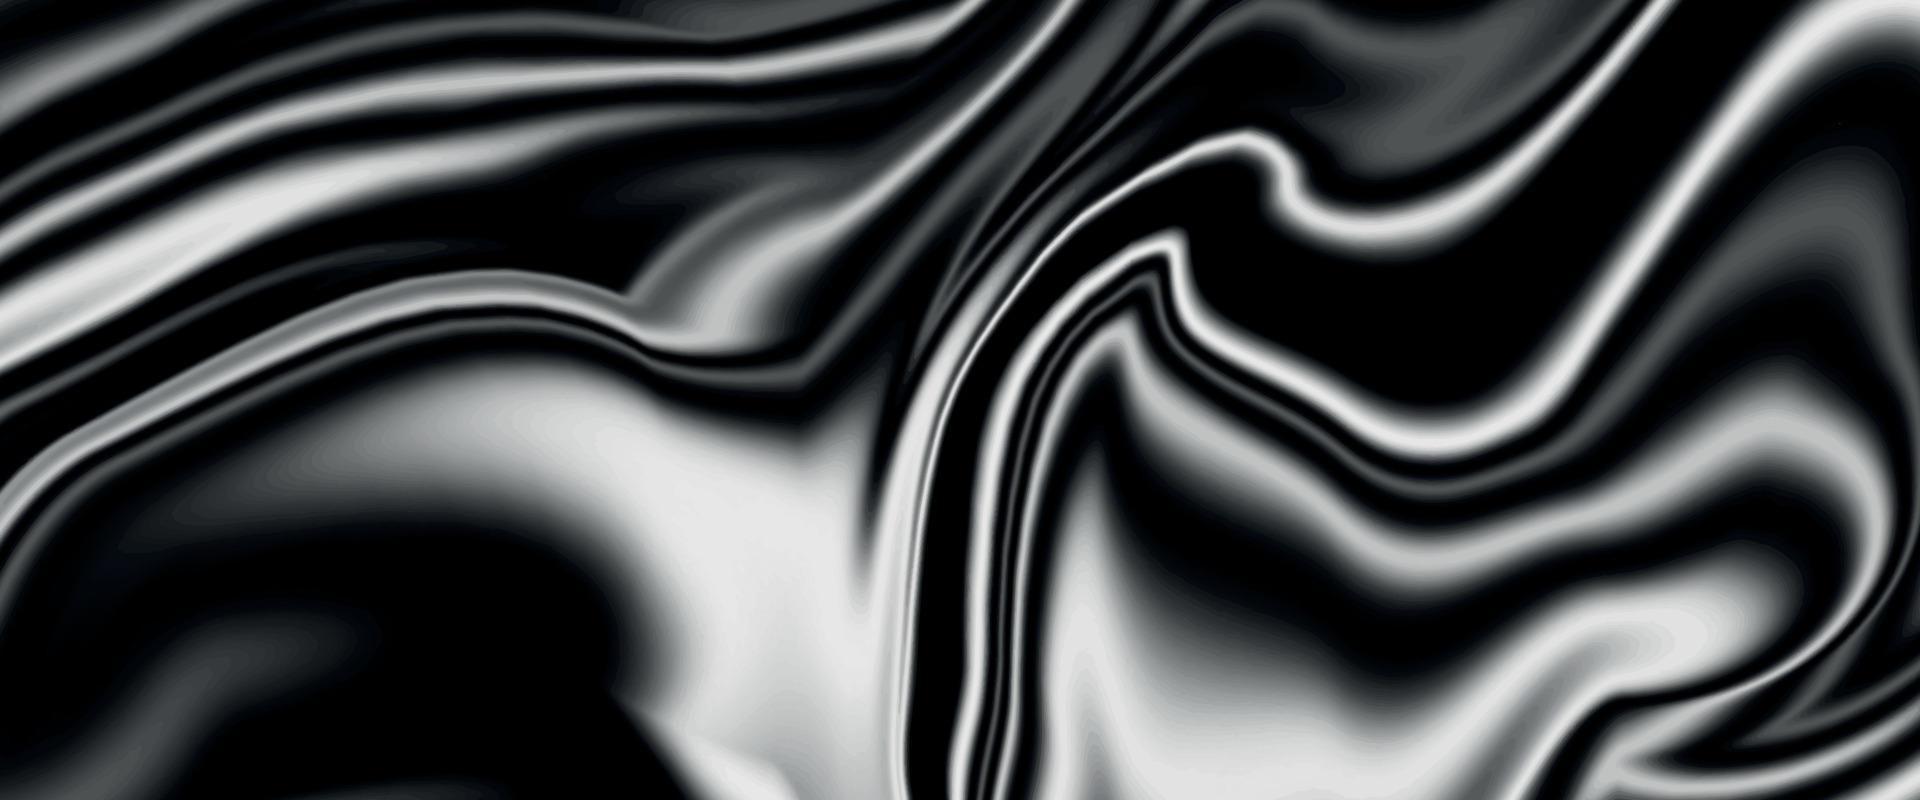 mooi marmering. marmeren textuur. verf plons. kleurrijk en luxe gekleurde vloeibaar maken achtergrond. glanzend vloeistof acryl verf textuur.abstract zwart grijs marmeren textuur. vector